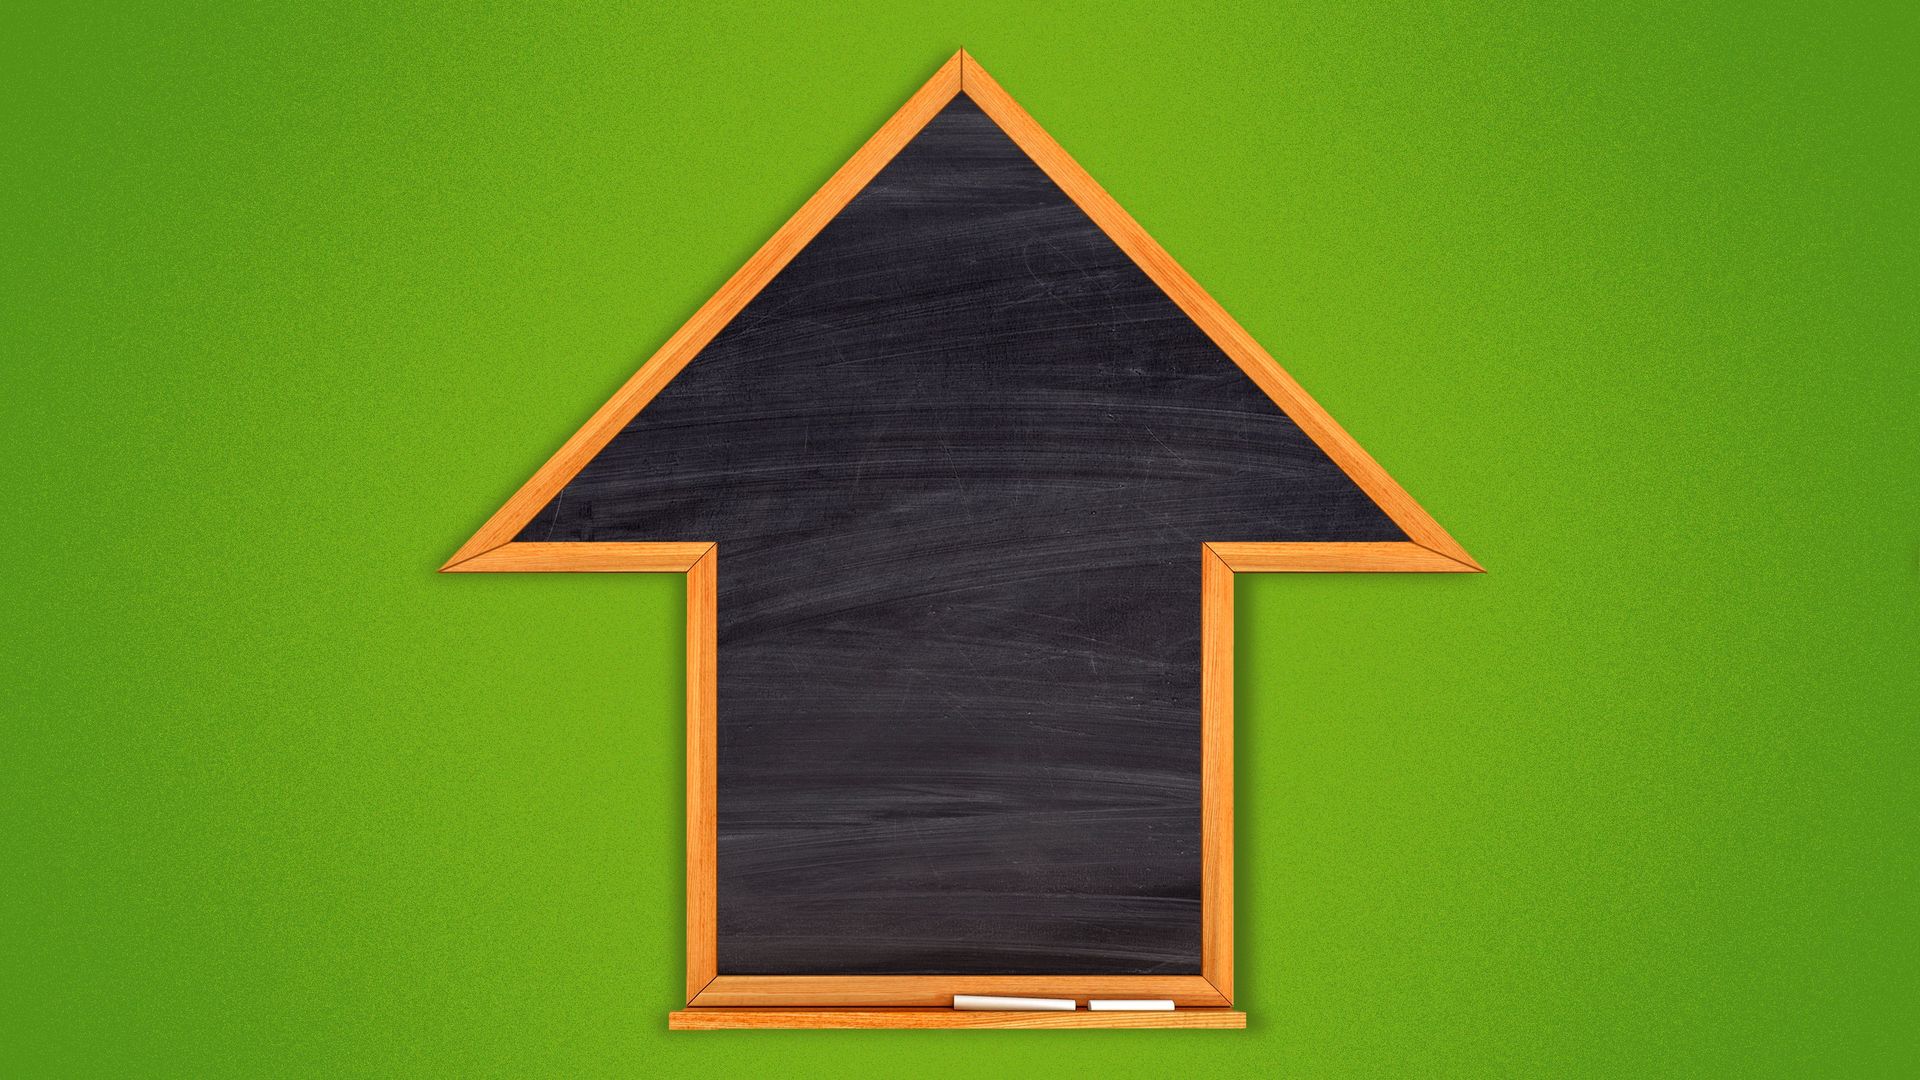 Illustration of a chalkboard in the shape of an upward arrow.